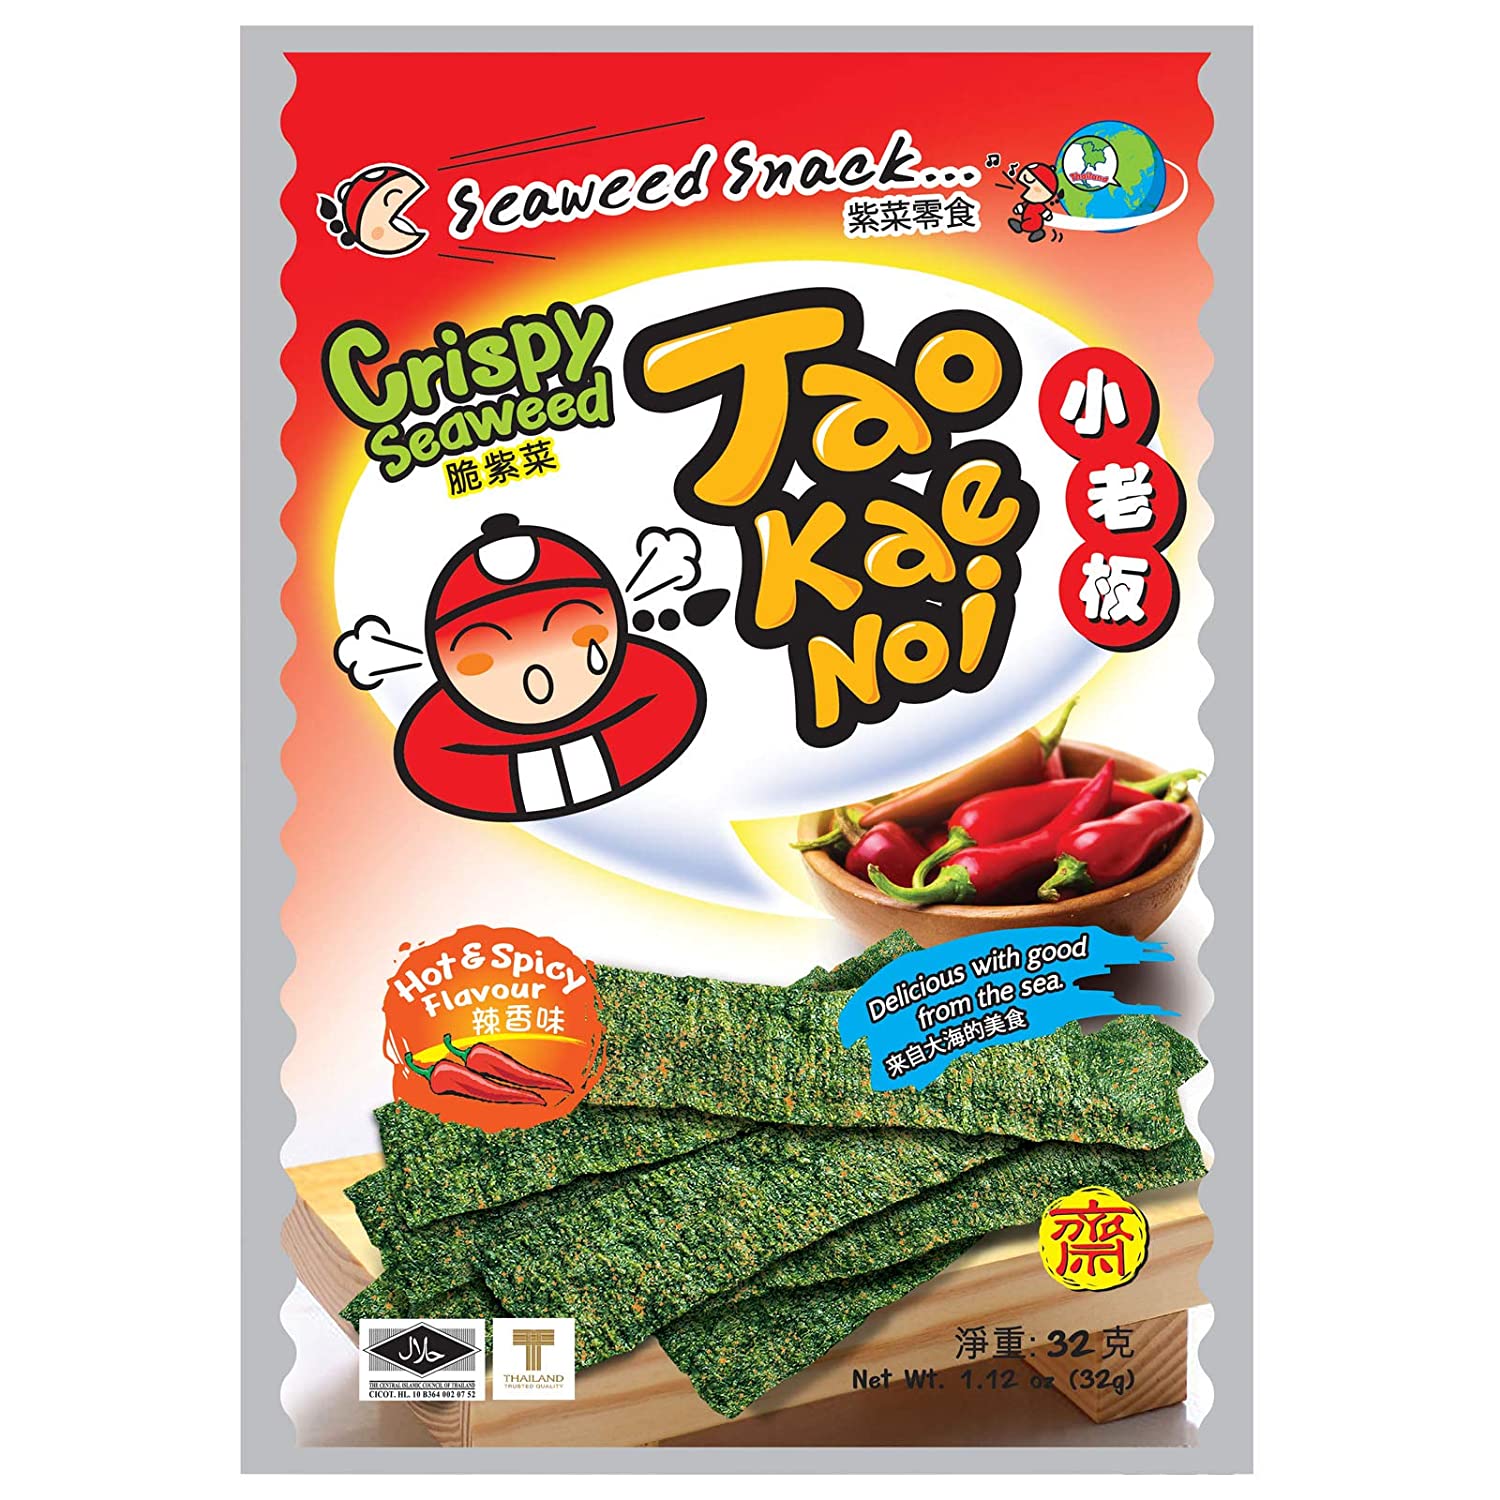 Tao Kae Noi Seaweed - Best things you should buy in Thailand